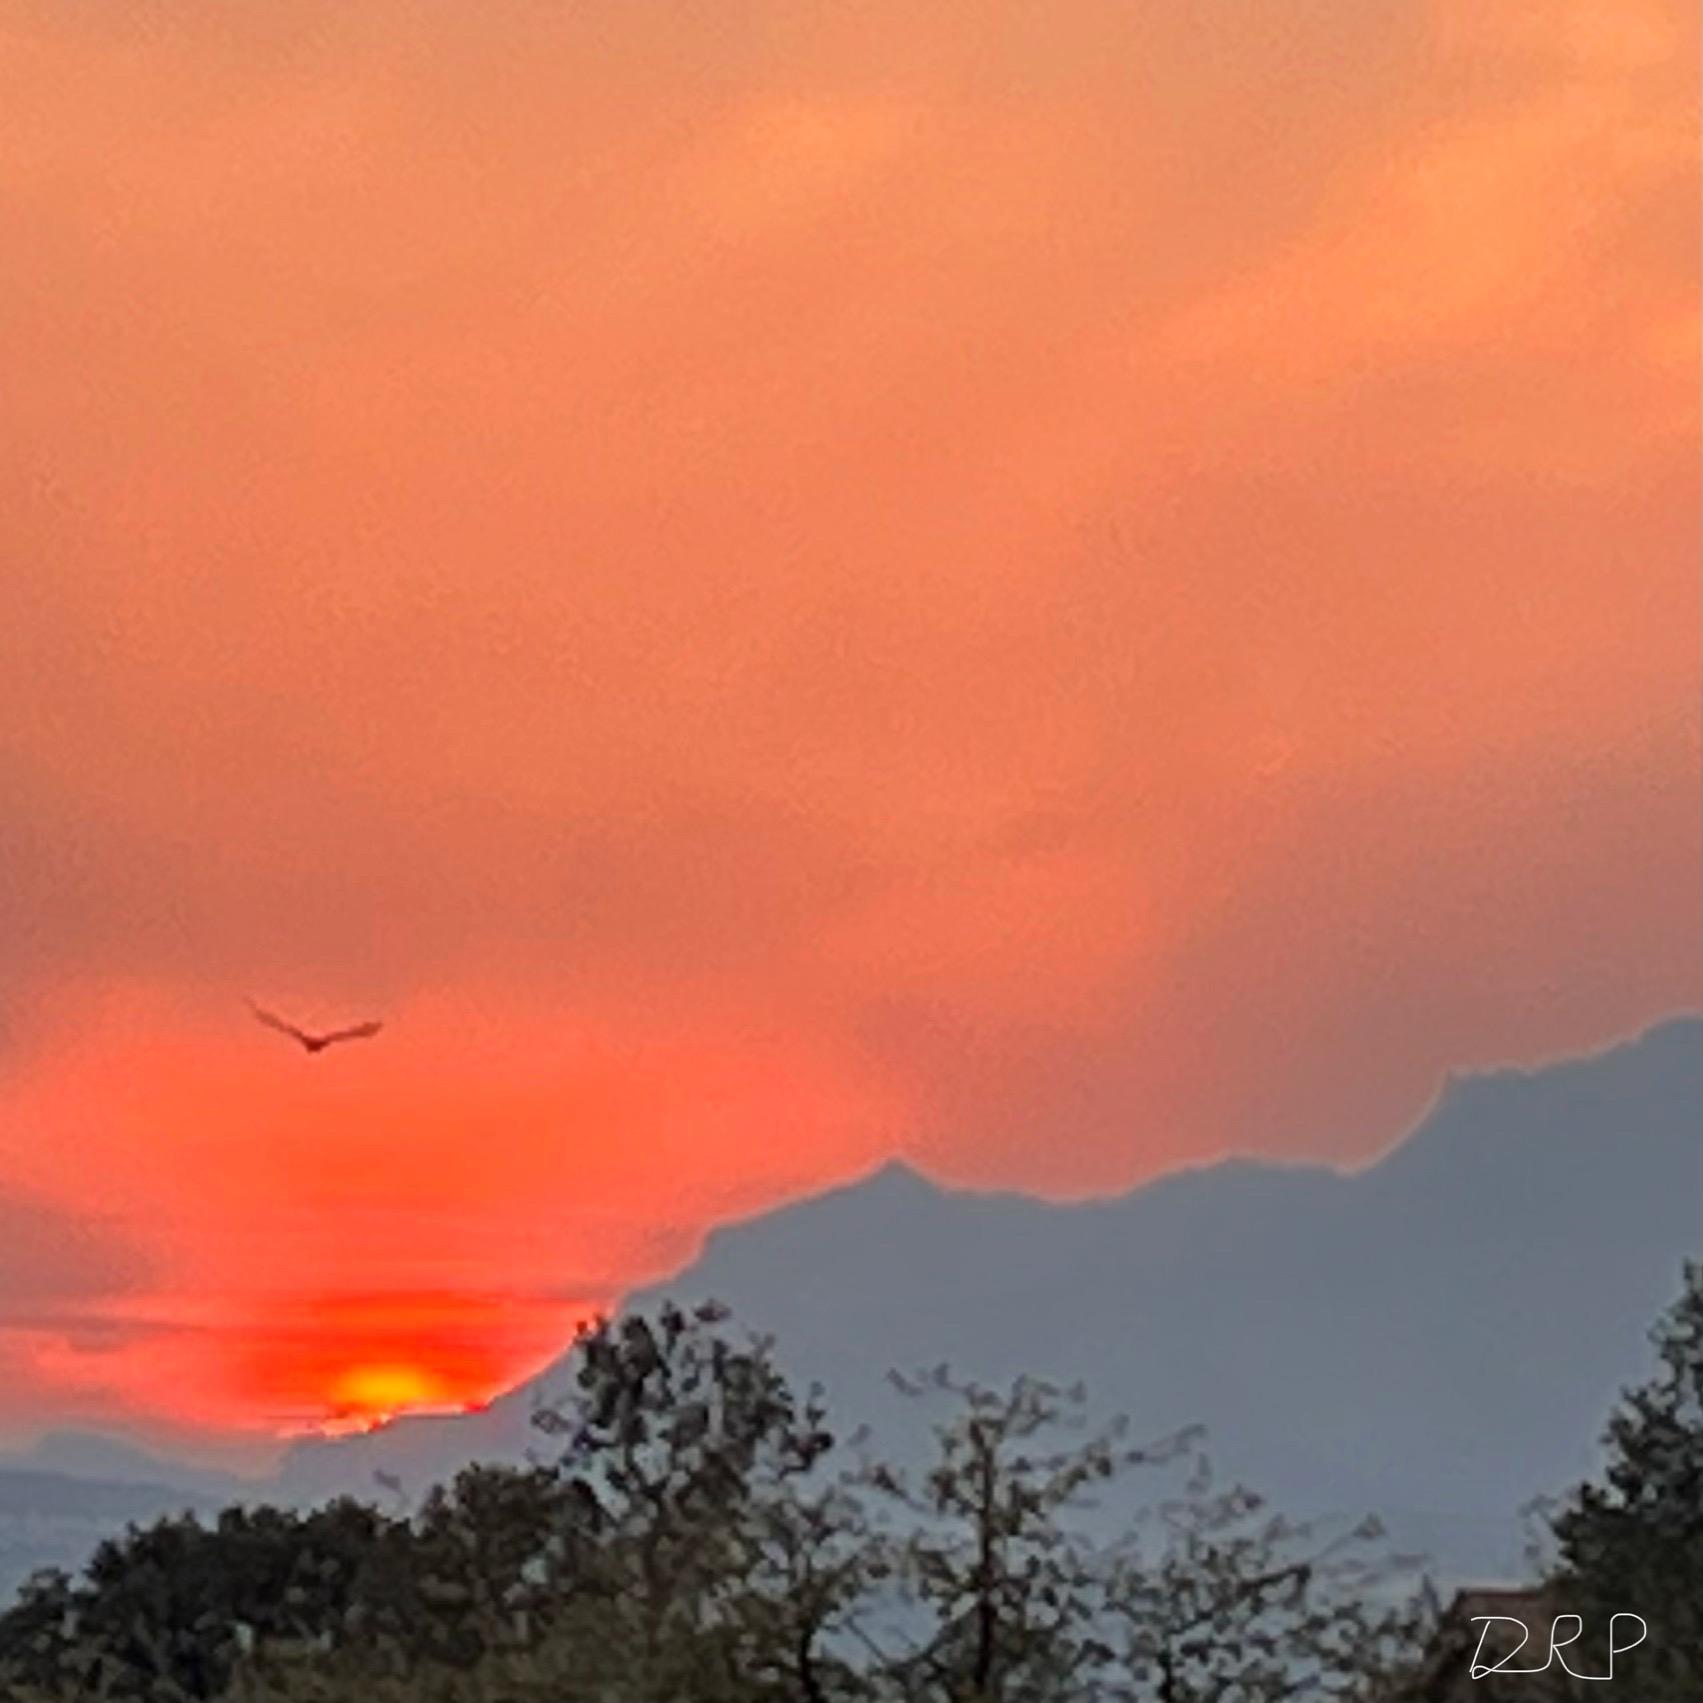 Sunset and bird seen thru smoke in a mountain vista.